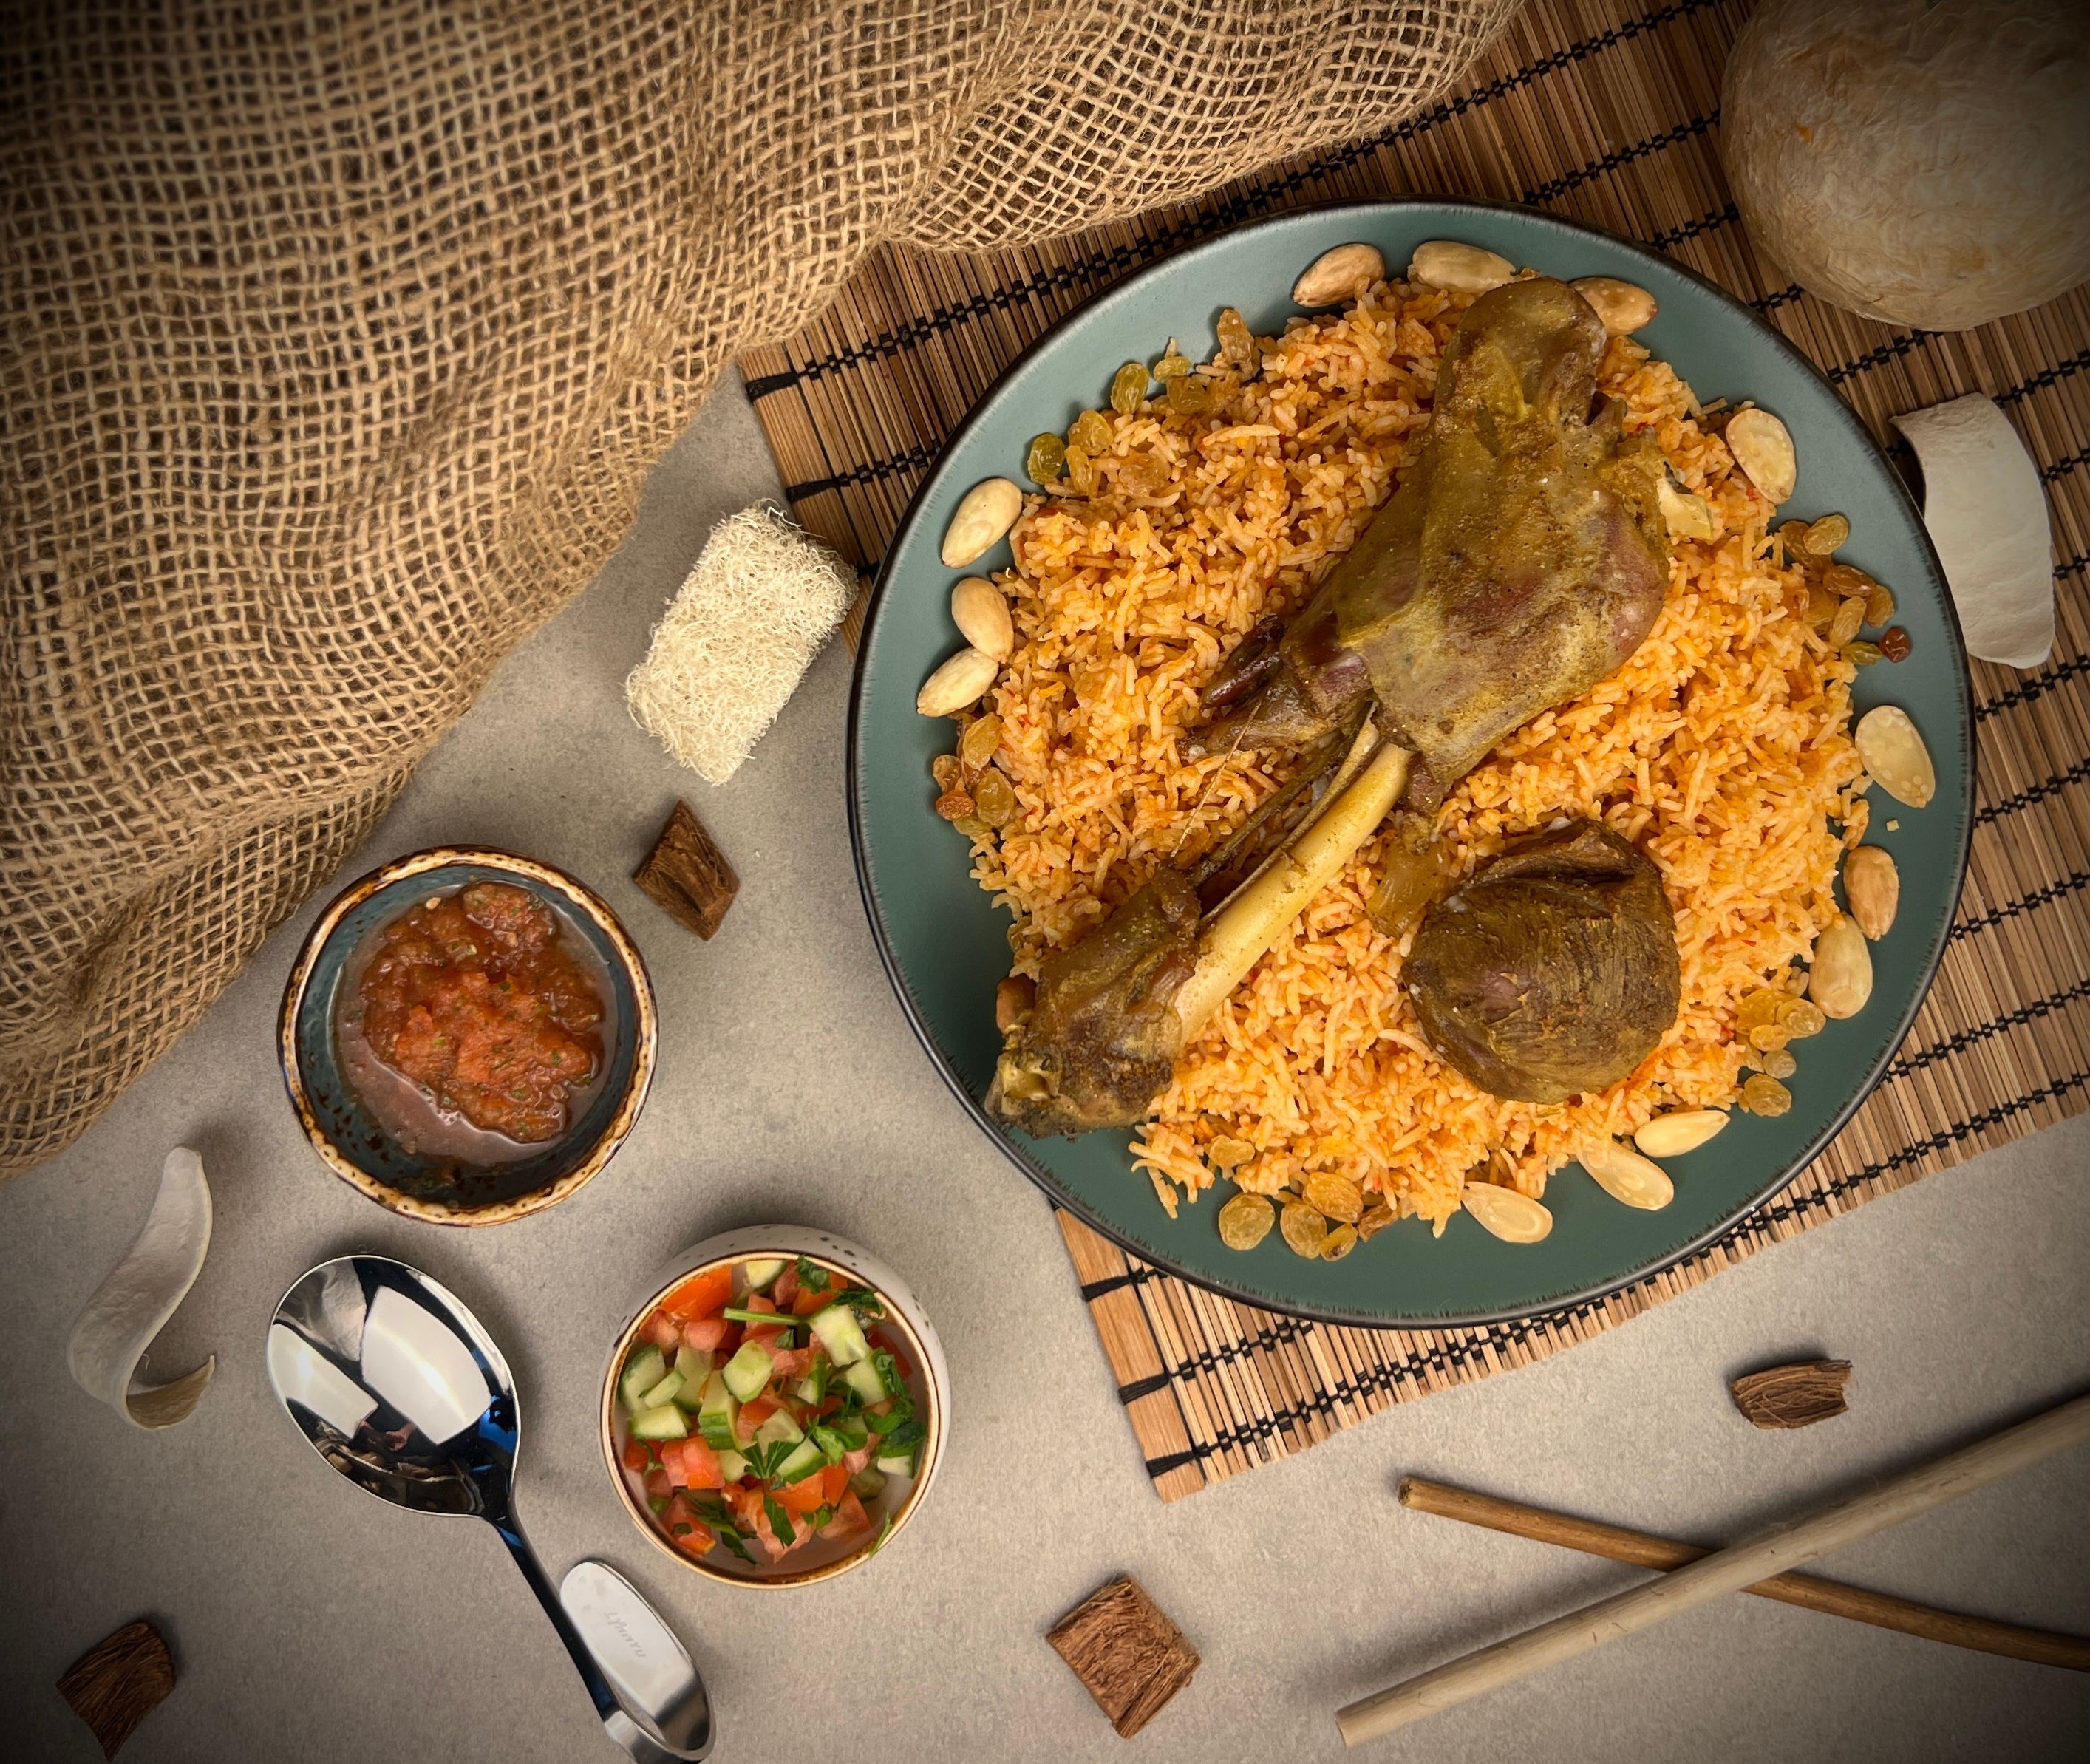 أرز كبسة المركاز الحجازي باللحم - Almirkaz Alhijazi Kabsa Rice with Meat